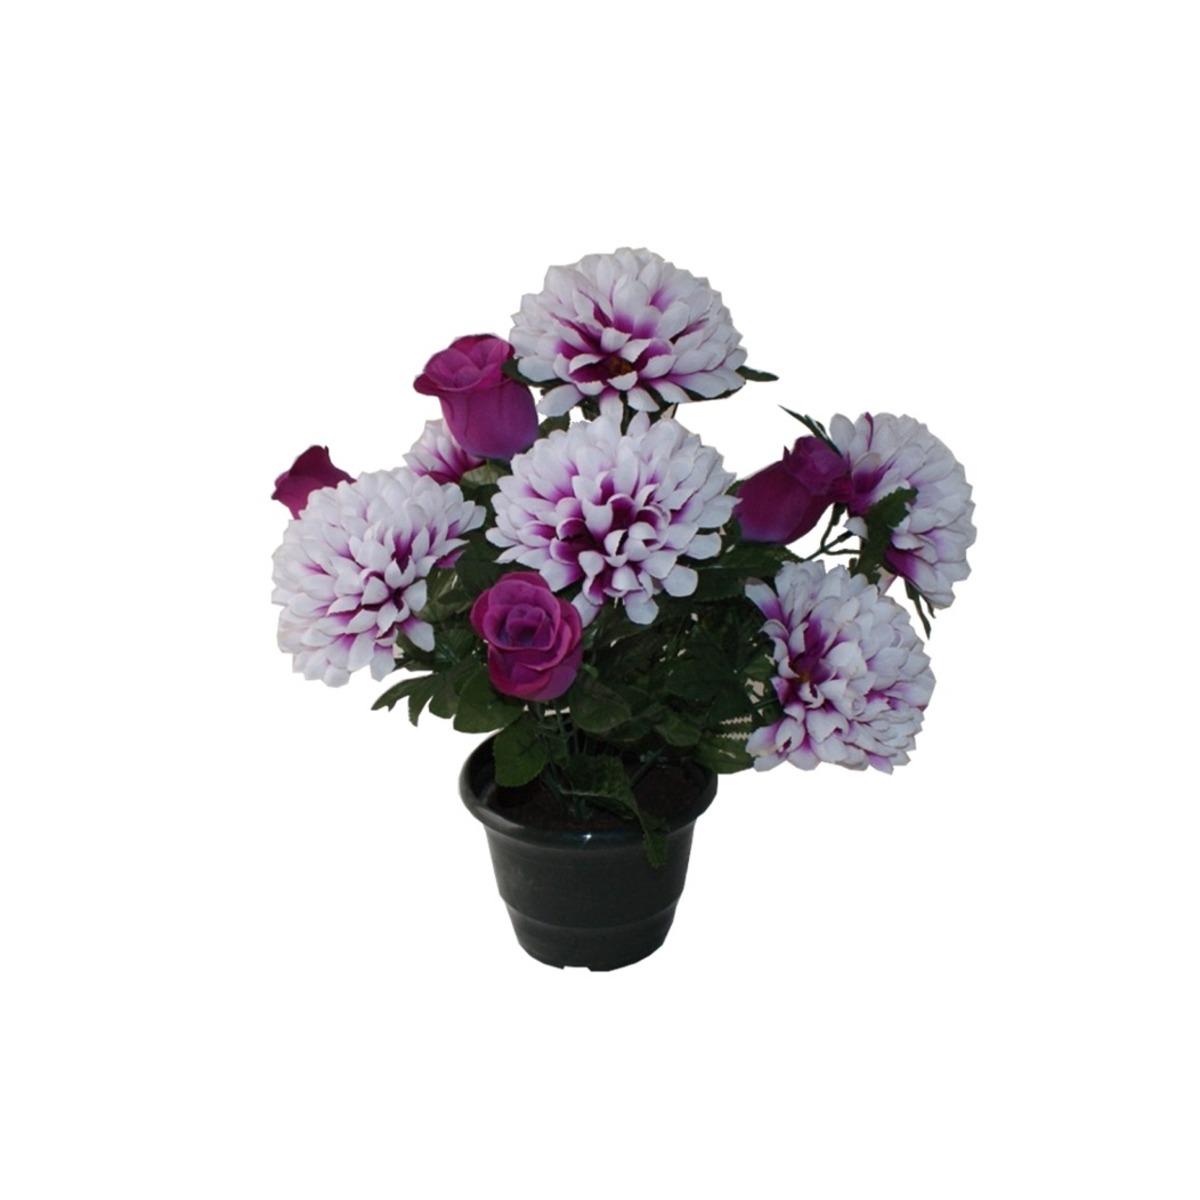 Potée de fleurs roses + chrysanthèmes - Hauteur 45 cm - Violet